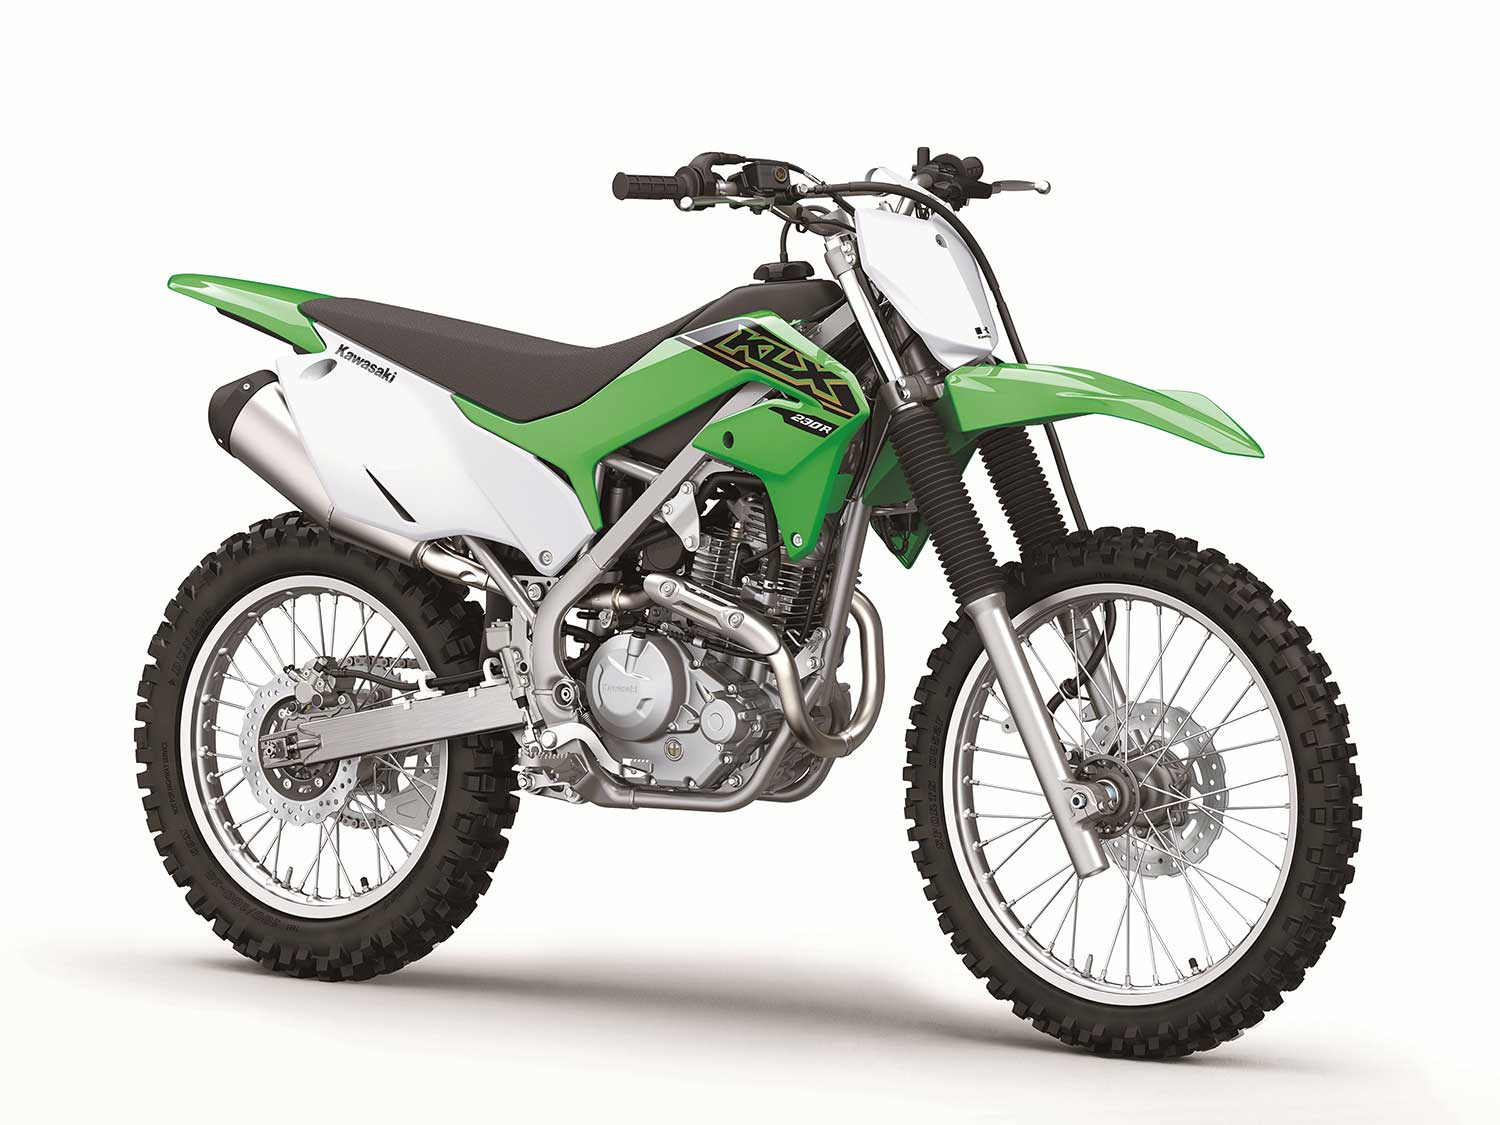 2021 Kawasaki KLX230R S First | Rider